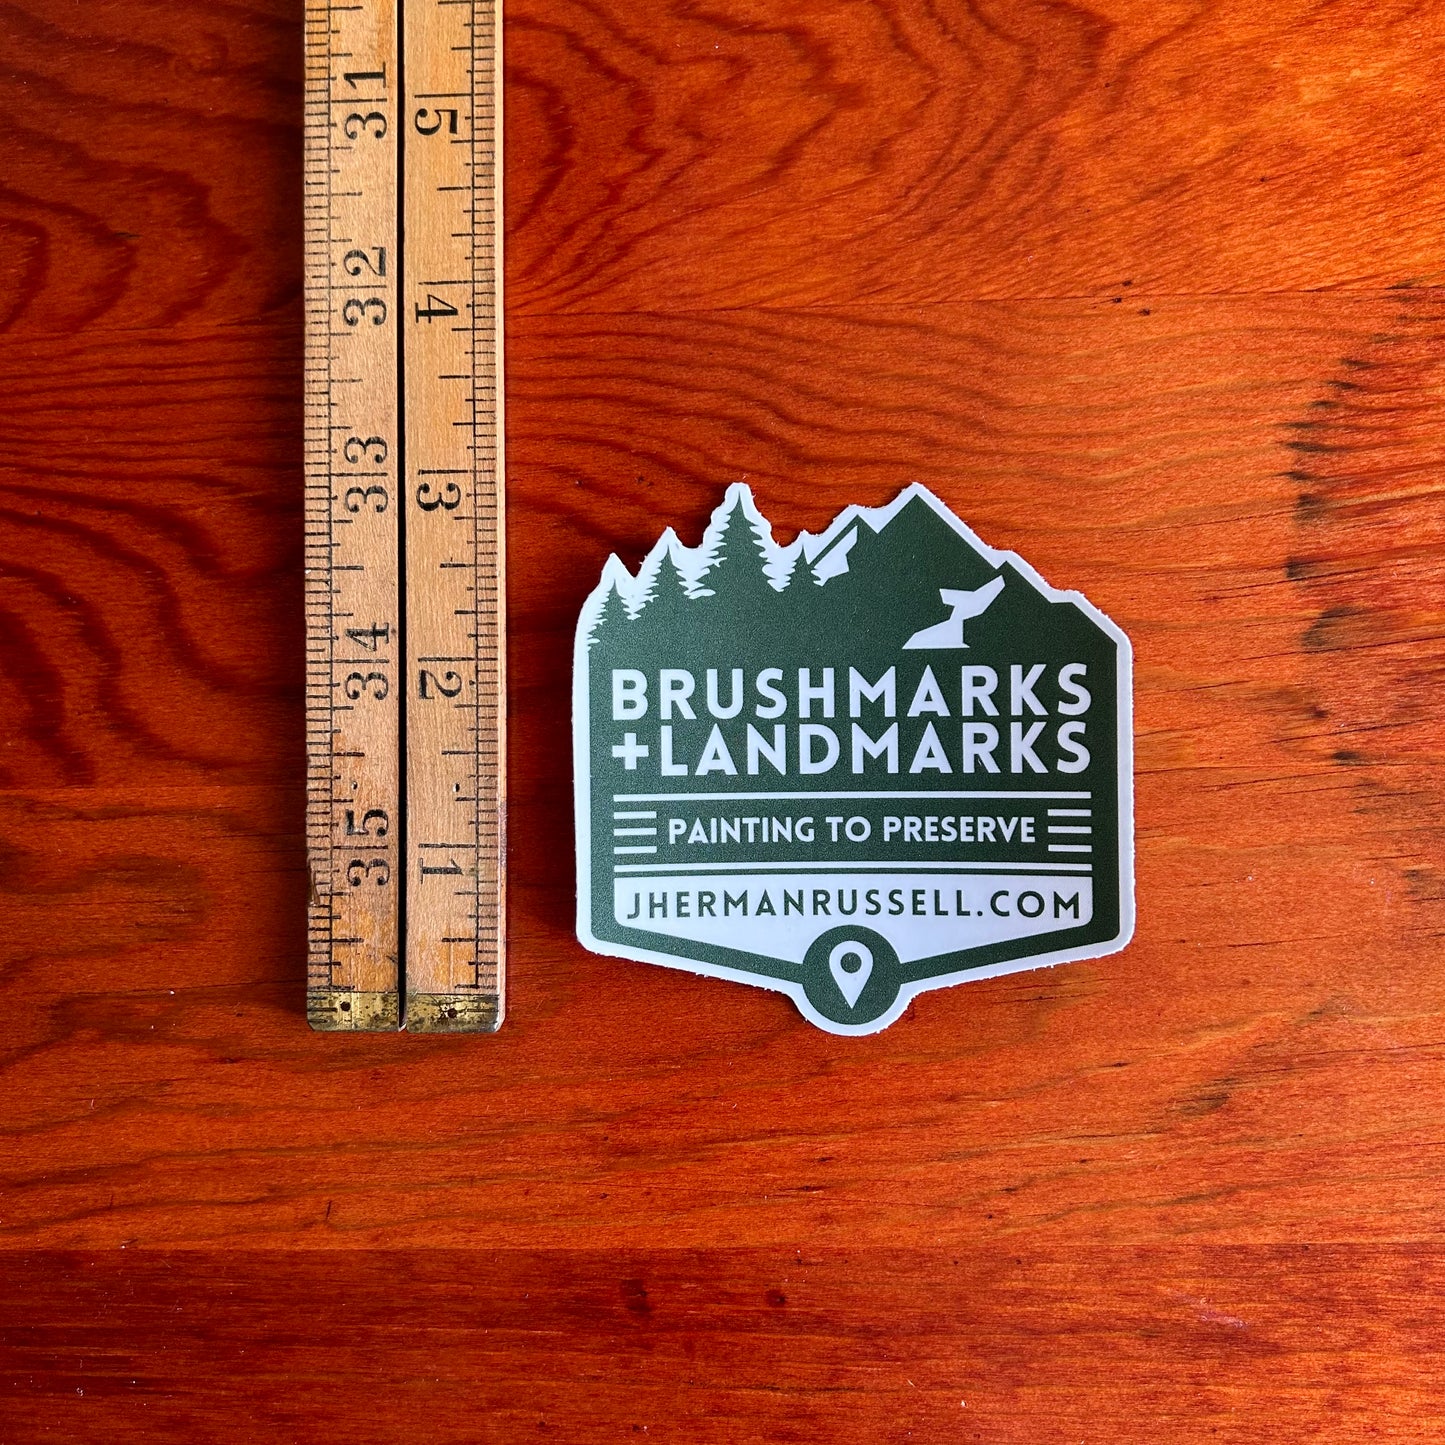 Brushmarks + Landmarks Sticker